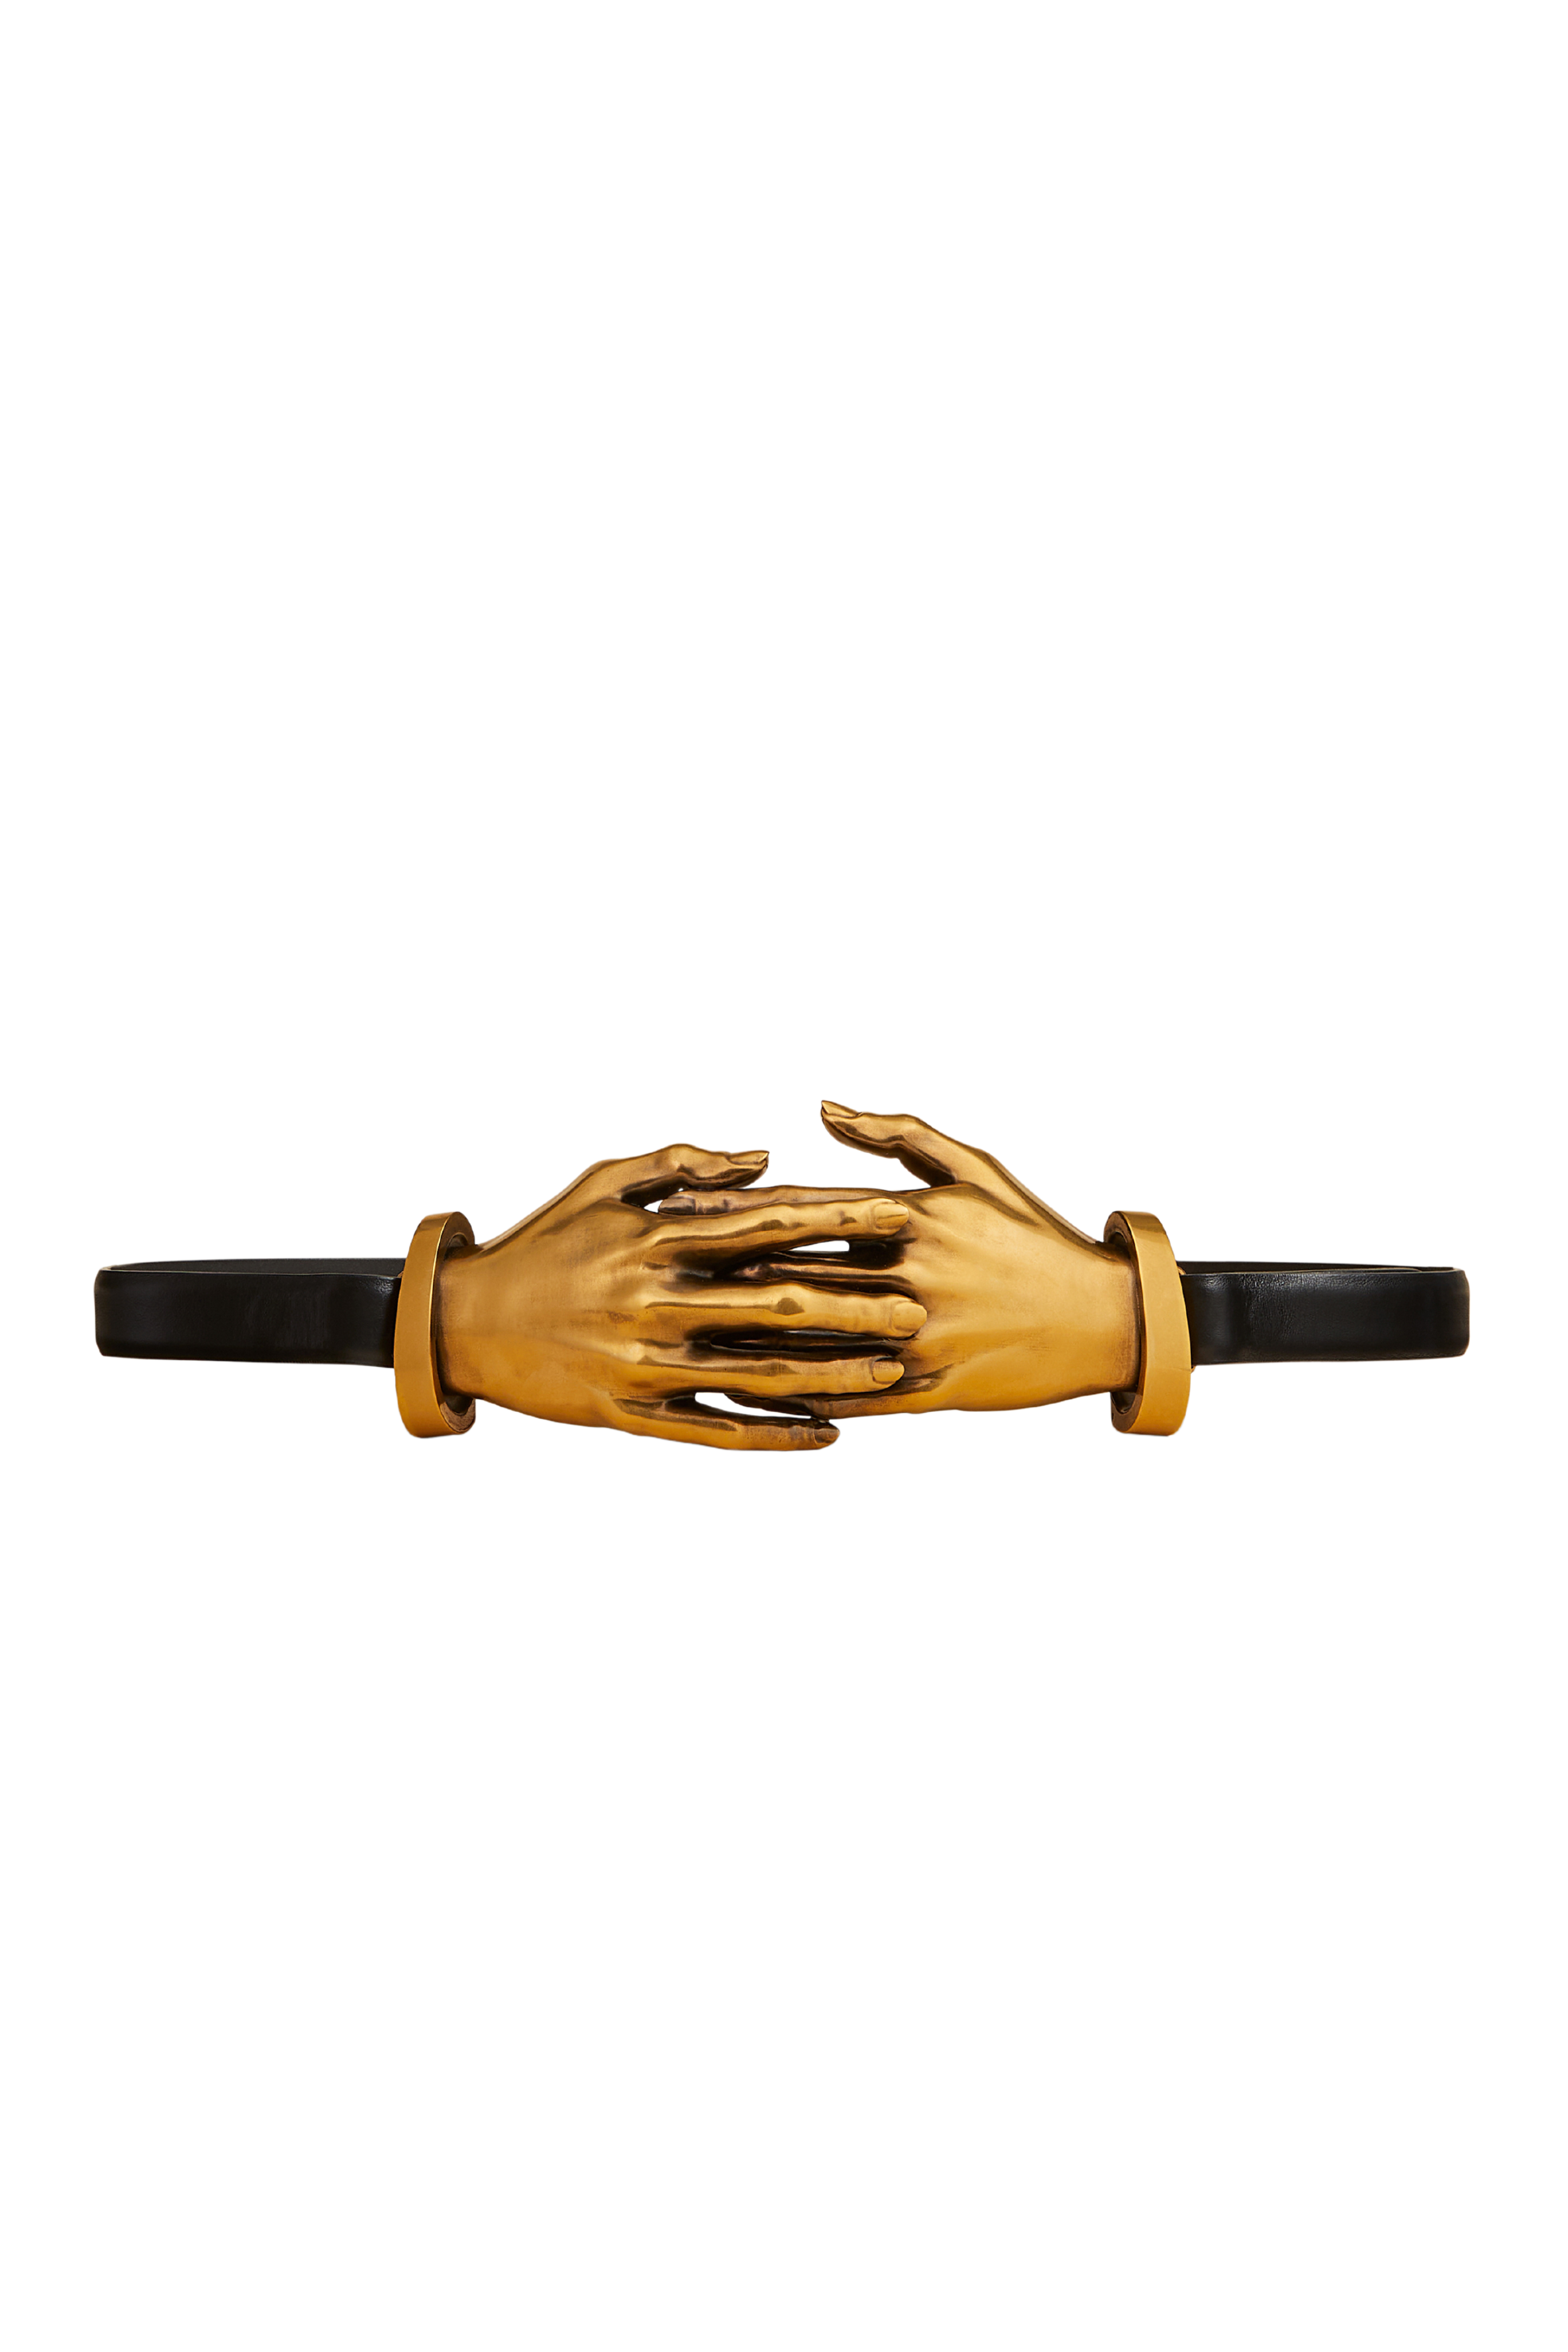 KHAITE Antique Gold Hand Leather Belt